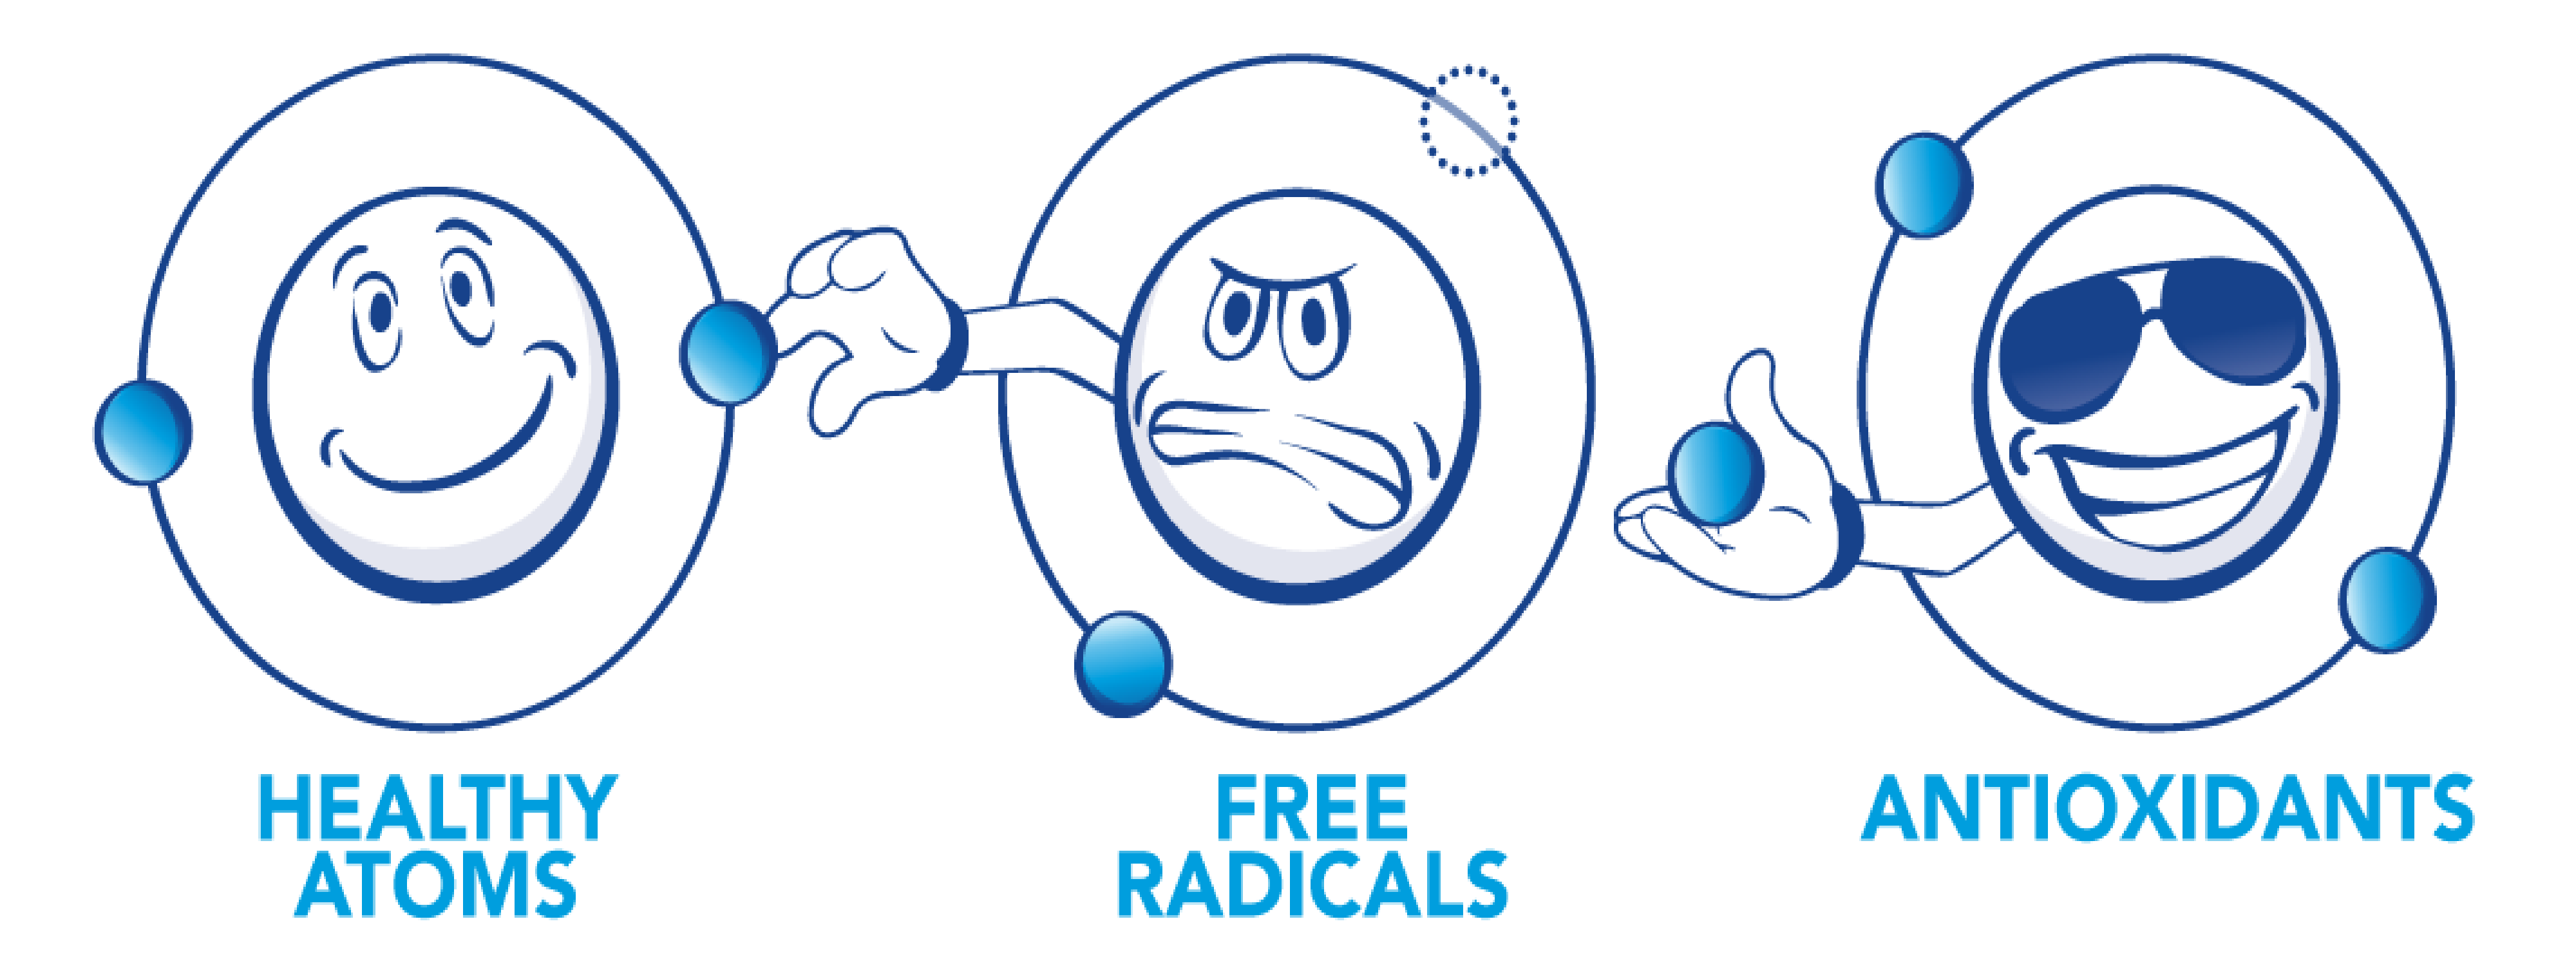 peranan antioksidan meneutralkan radikal bebas